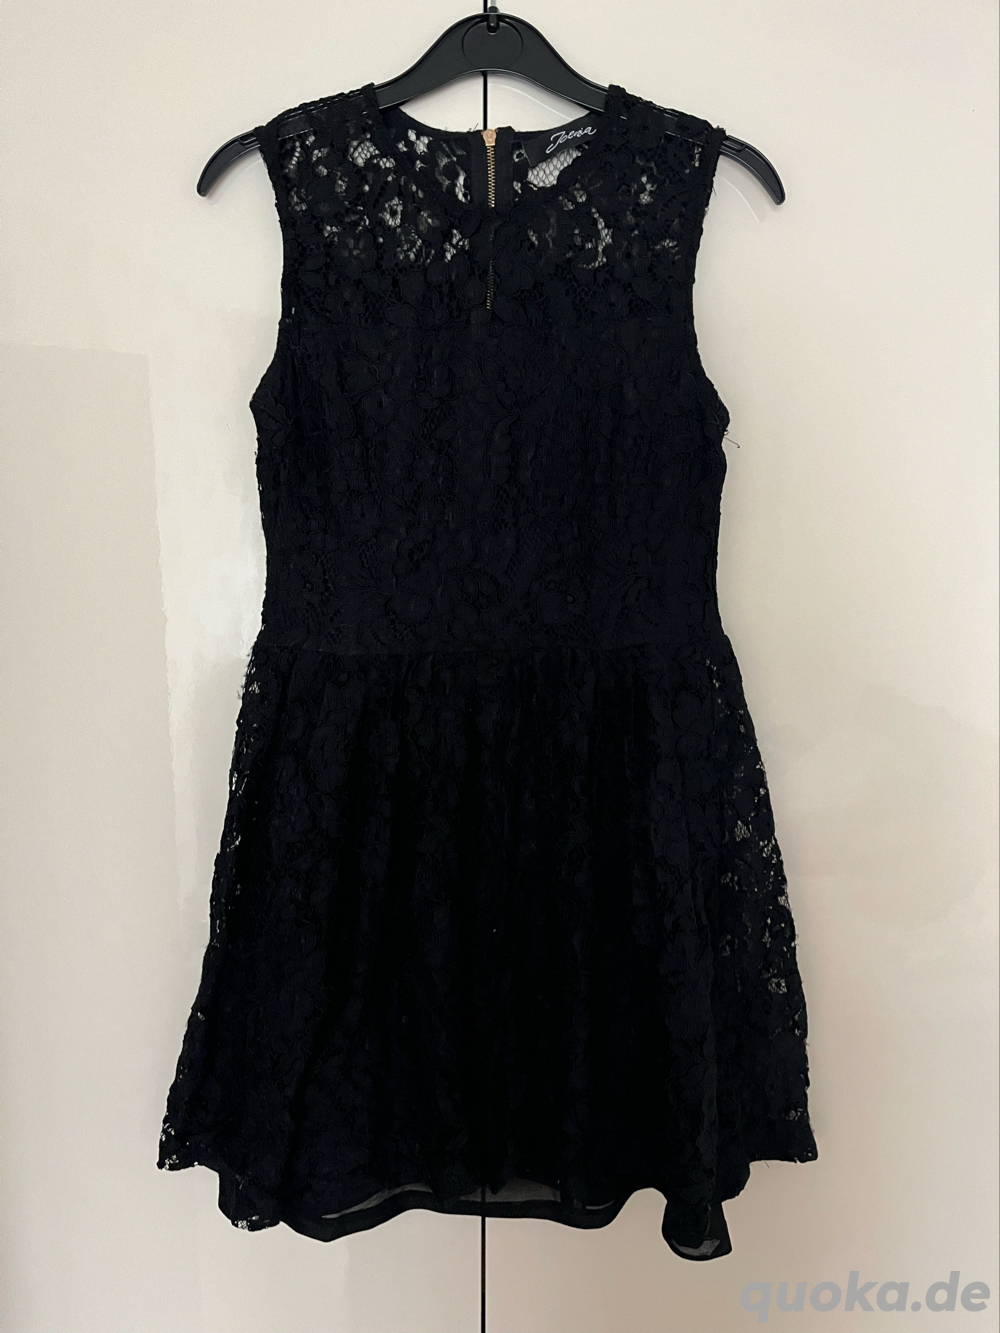 Damen Kleid Größe M schwarz mit Spitze Sommerkleid 